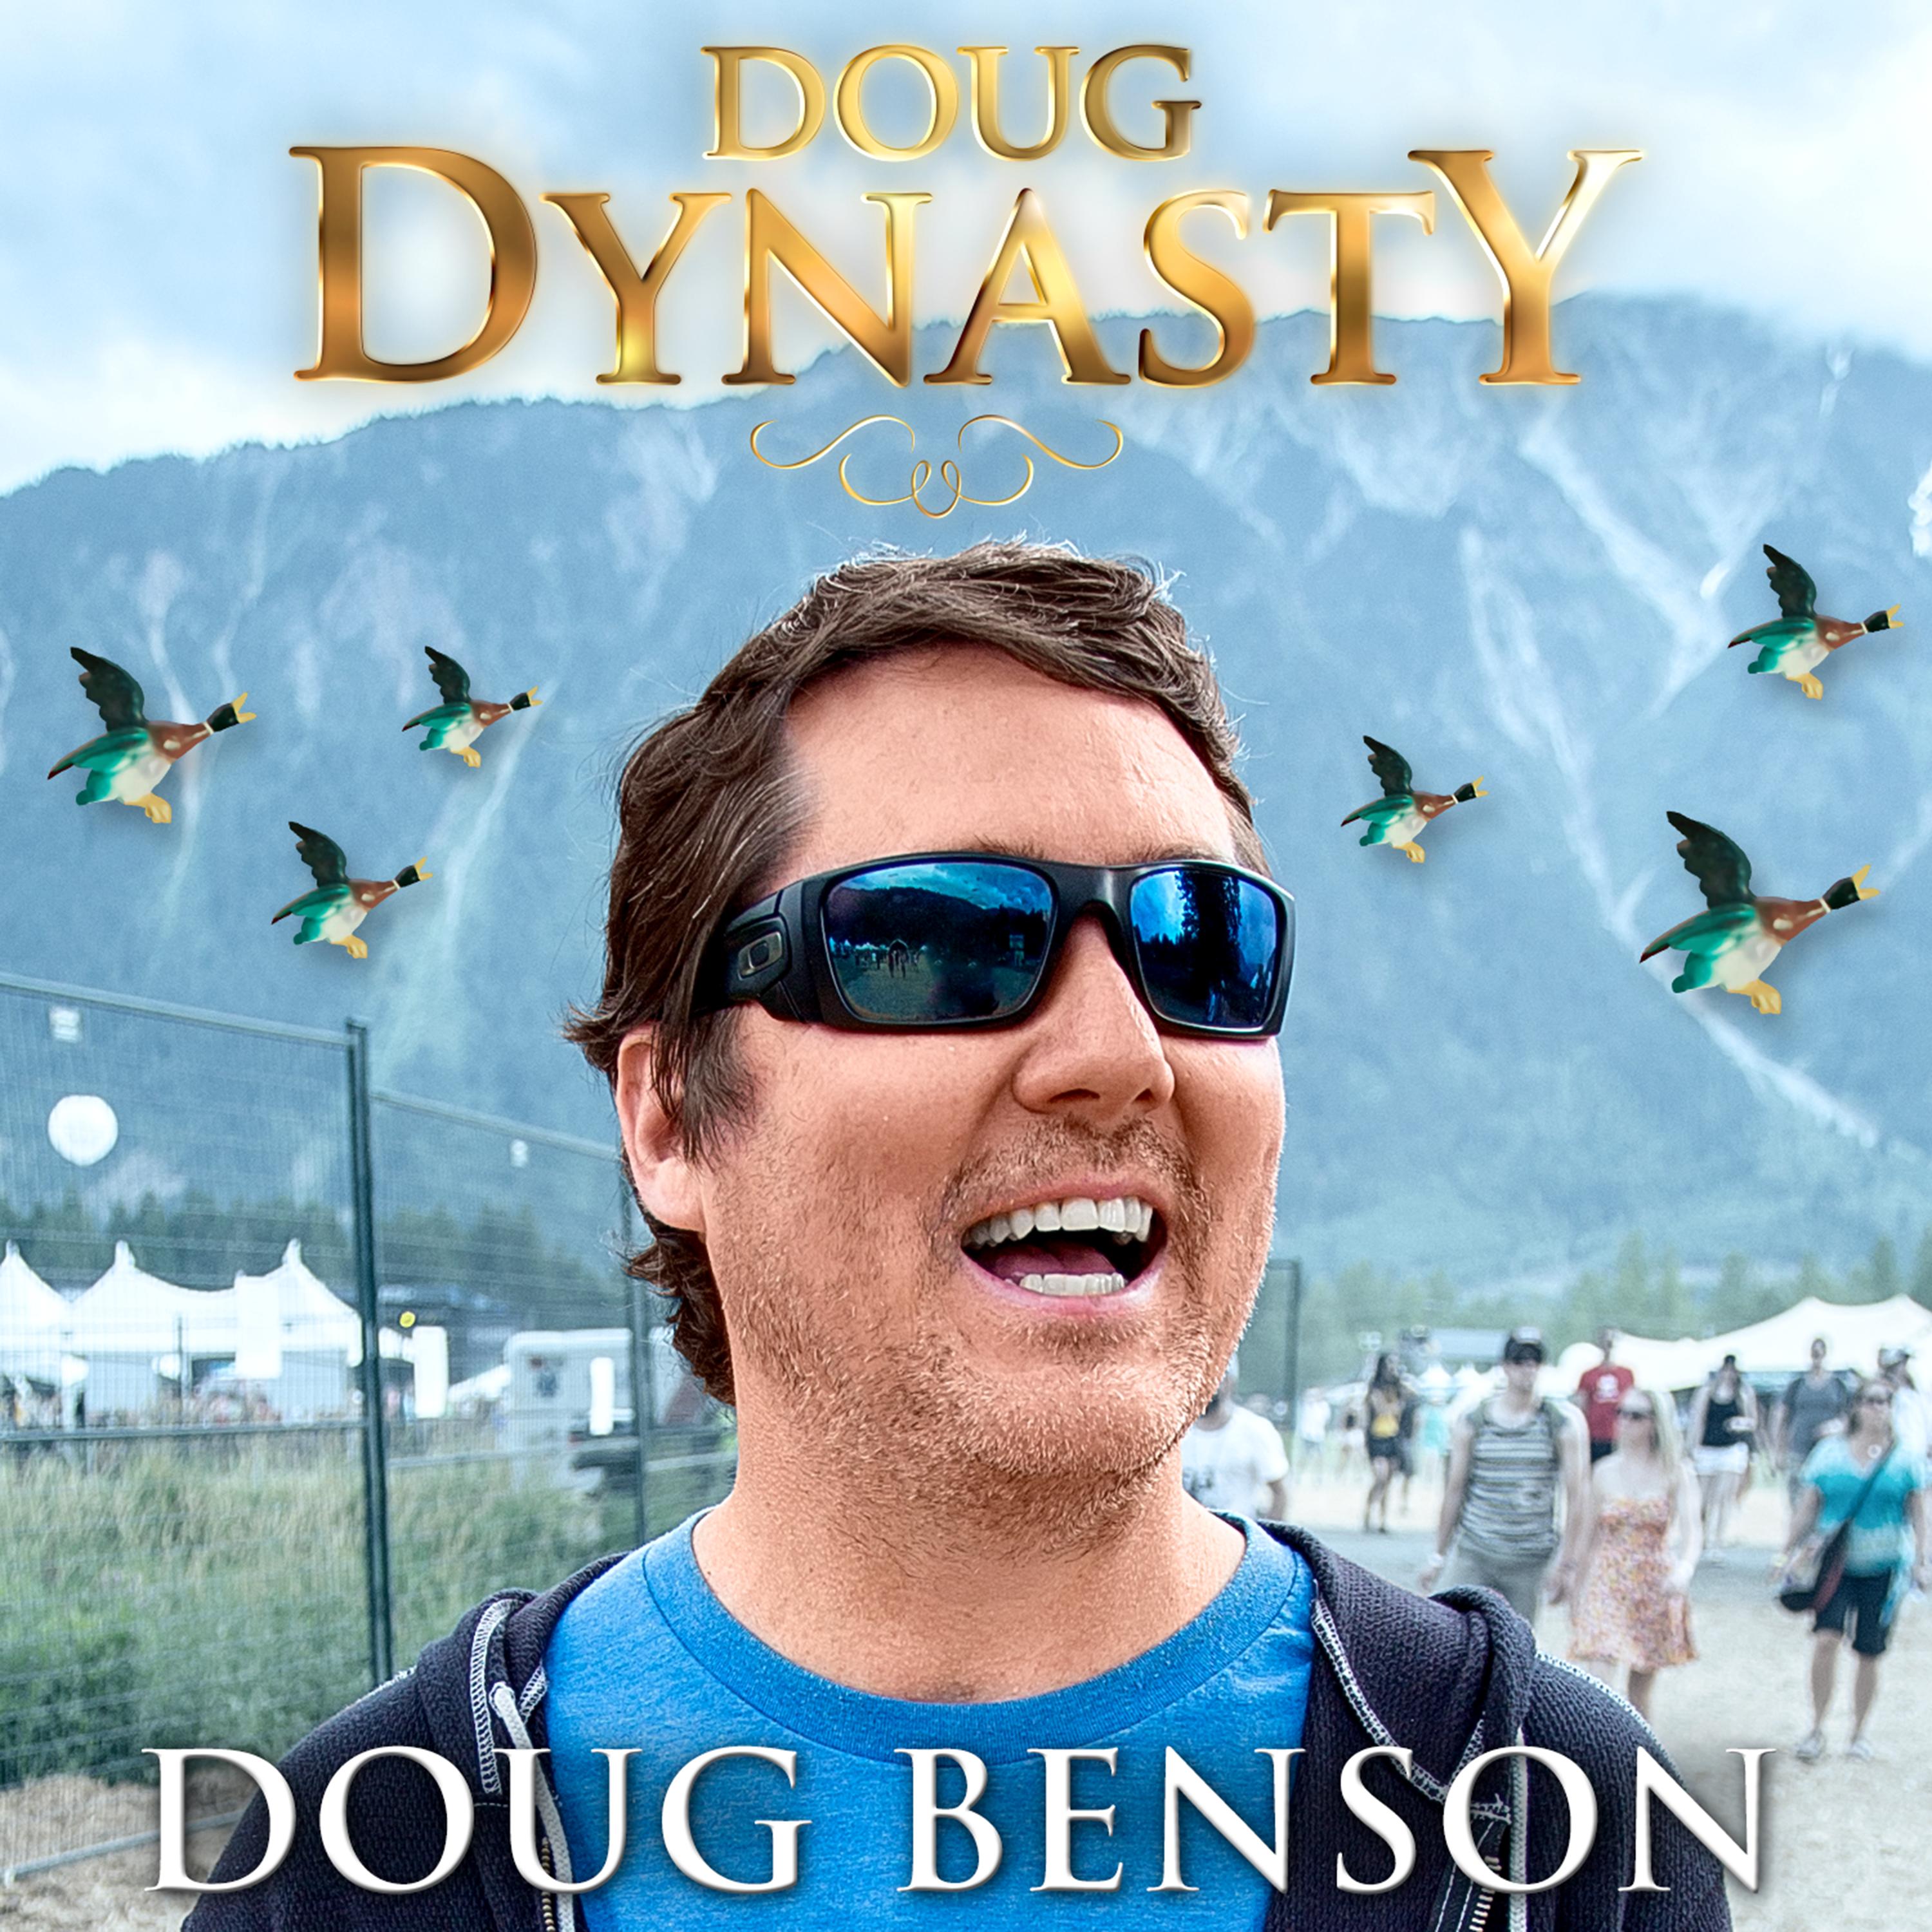 Doug Dynasty